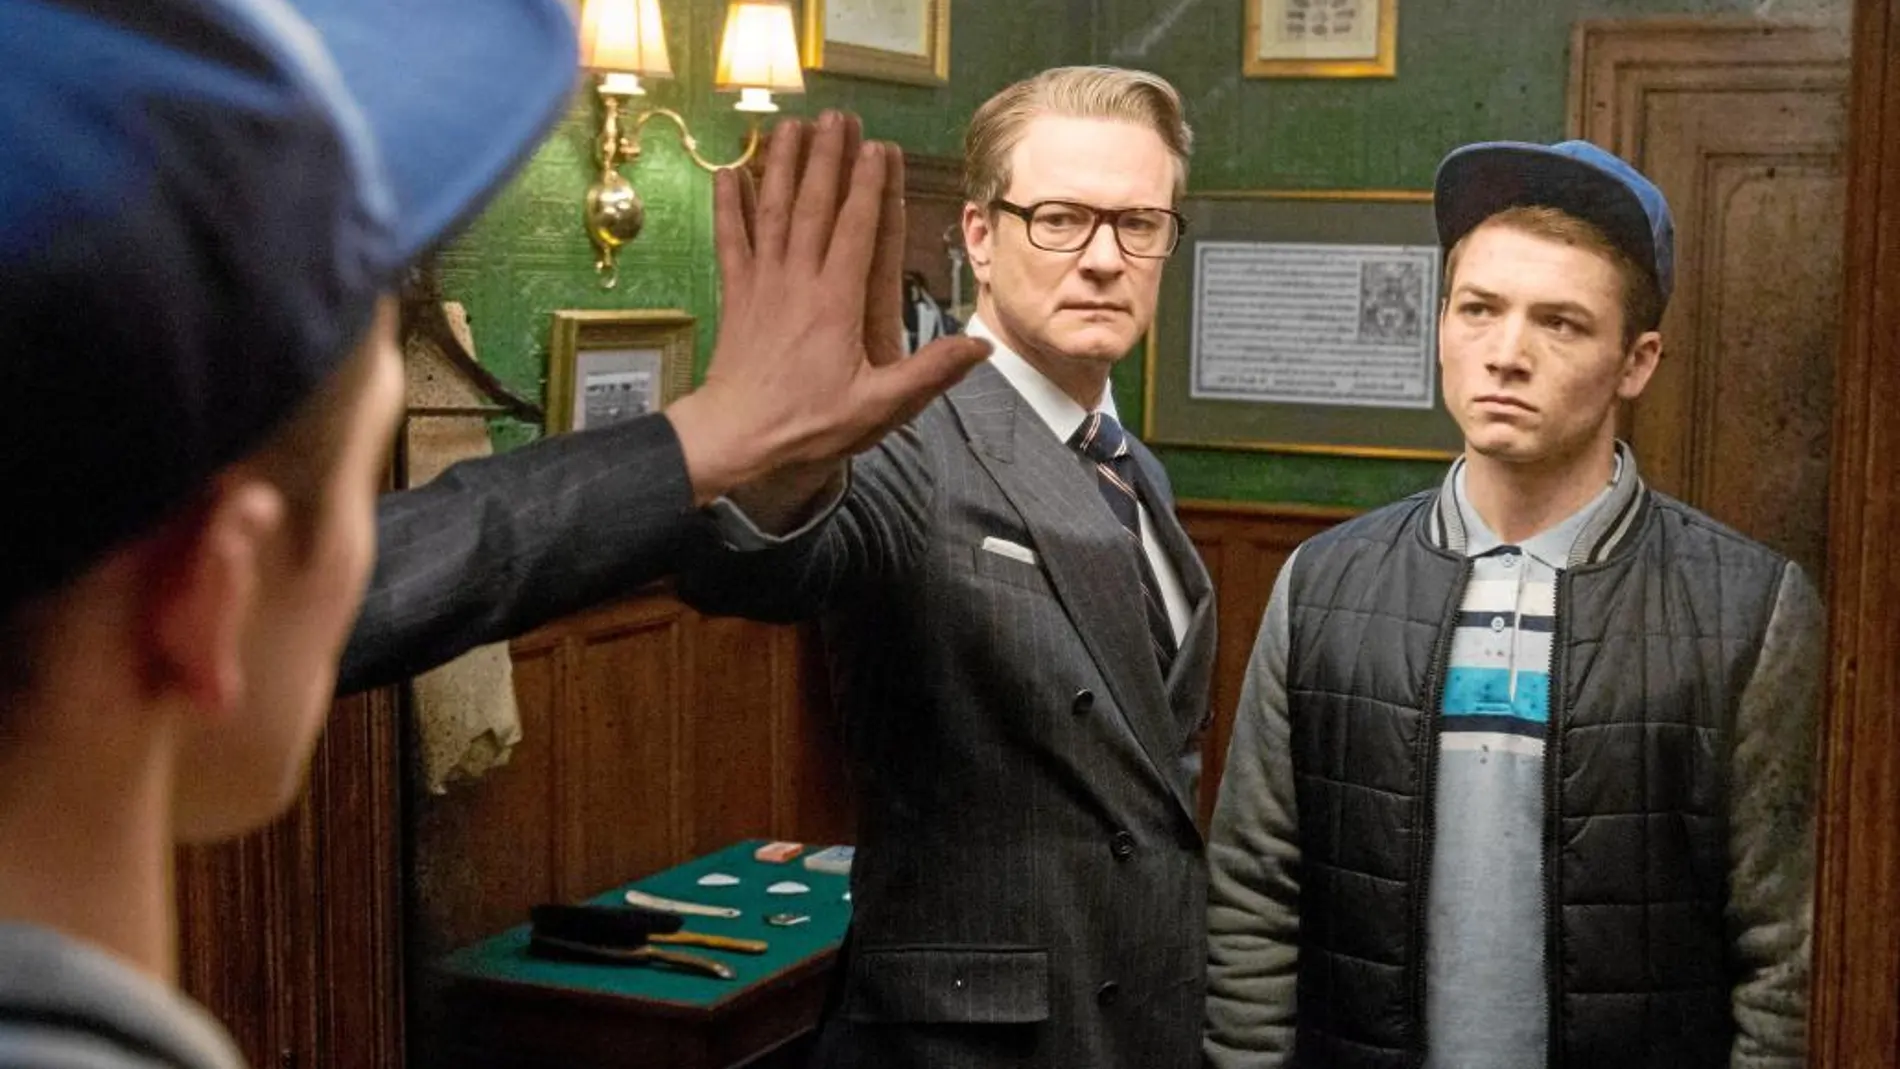 Frente al espejo. Colin Firth alecciona a un muchacho rebelde (Taron Egerton) en el espionaje